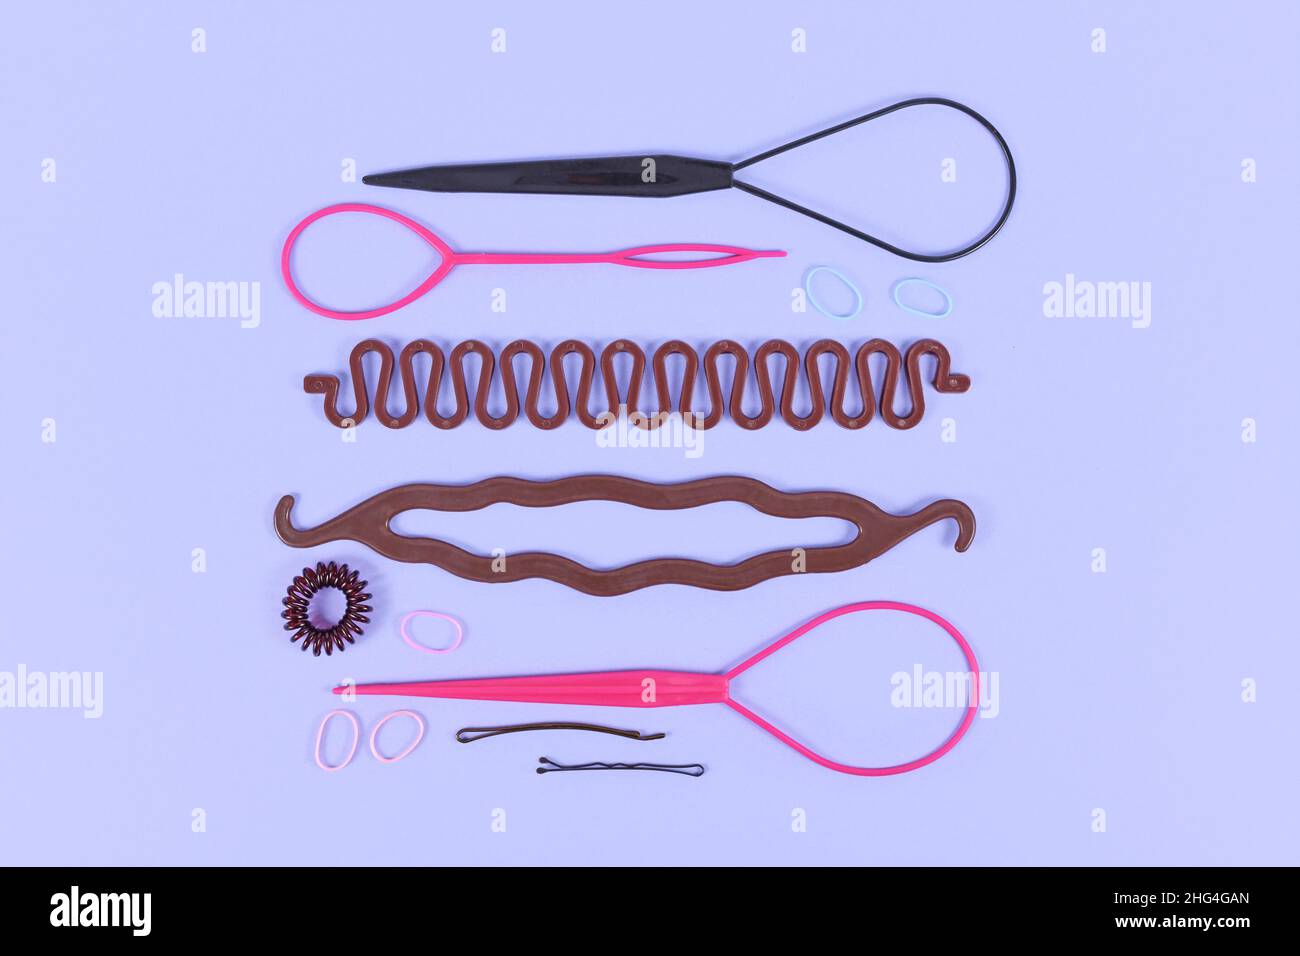 Divers outils de coiffage tels que l'appareil à pain, l'outil de tresse, l'appareil à queue de cheval, le clip à cheveux, les bandes en caoutchouc et les épingles sur fond violet Banque D'Images